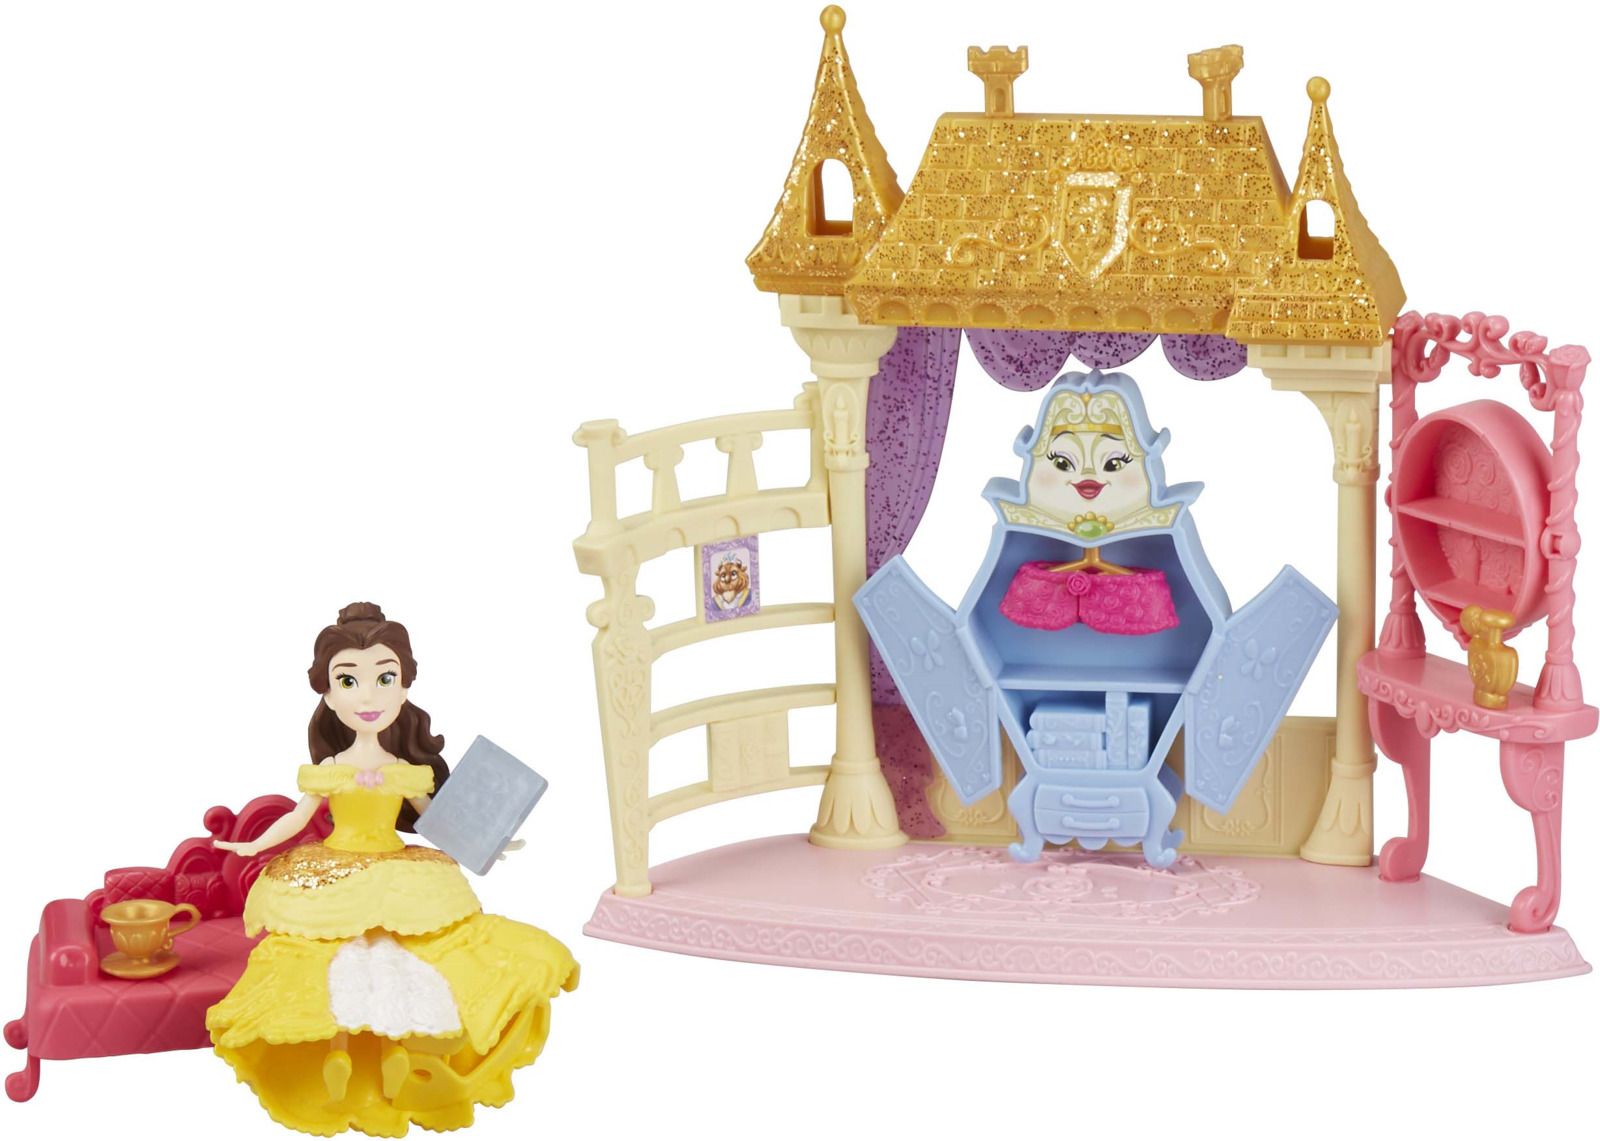   Disney Princess Small Doll Asst, E3052EU4